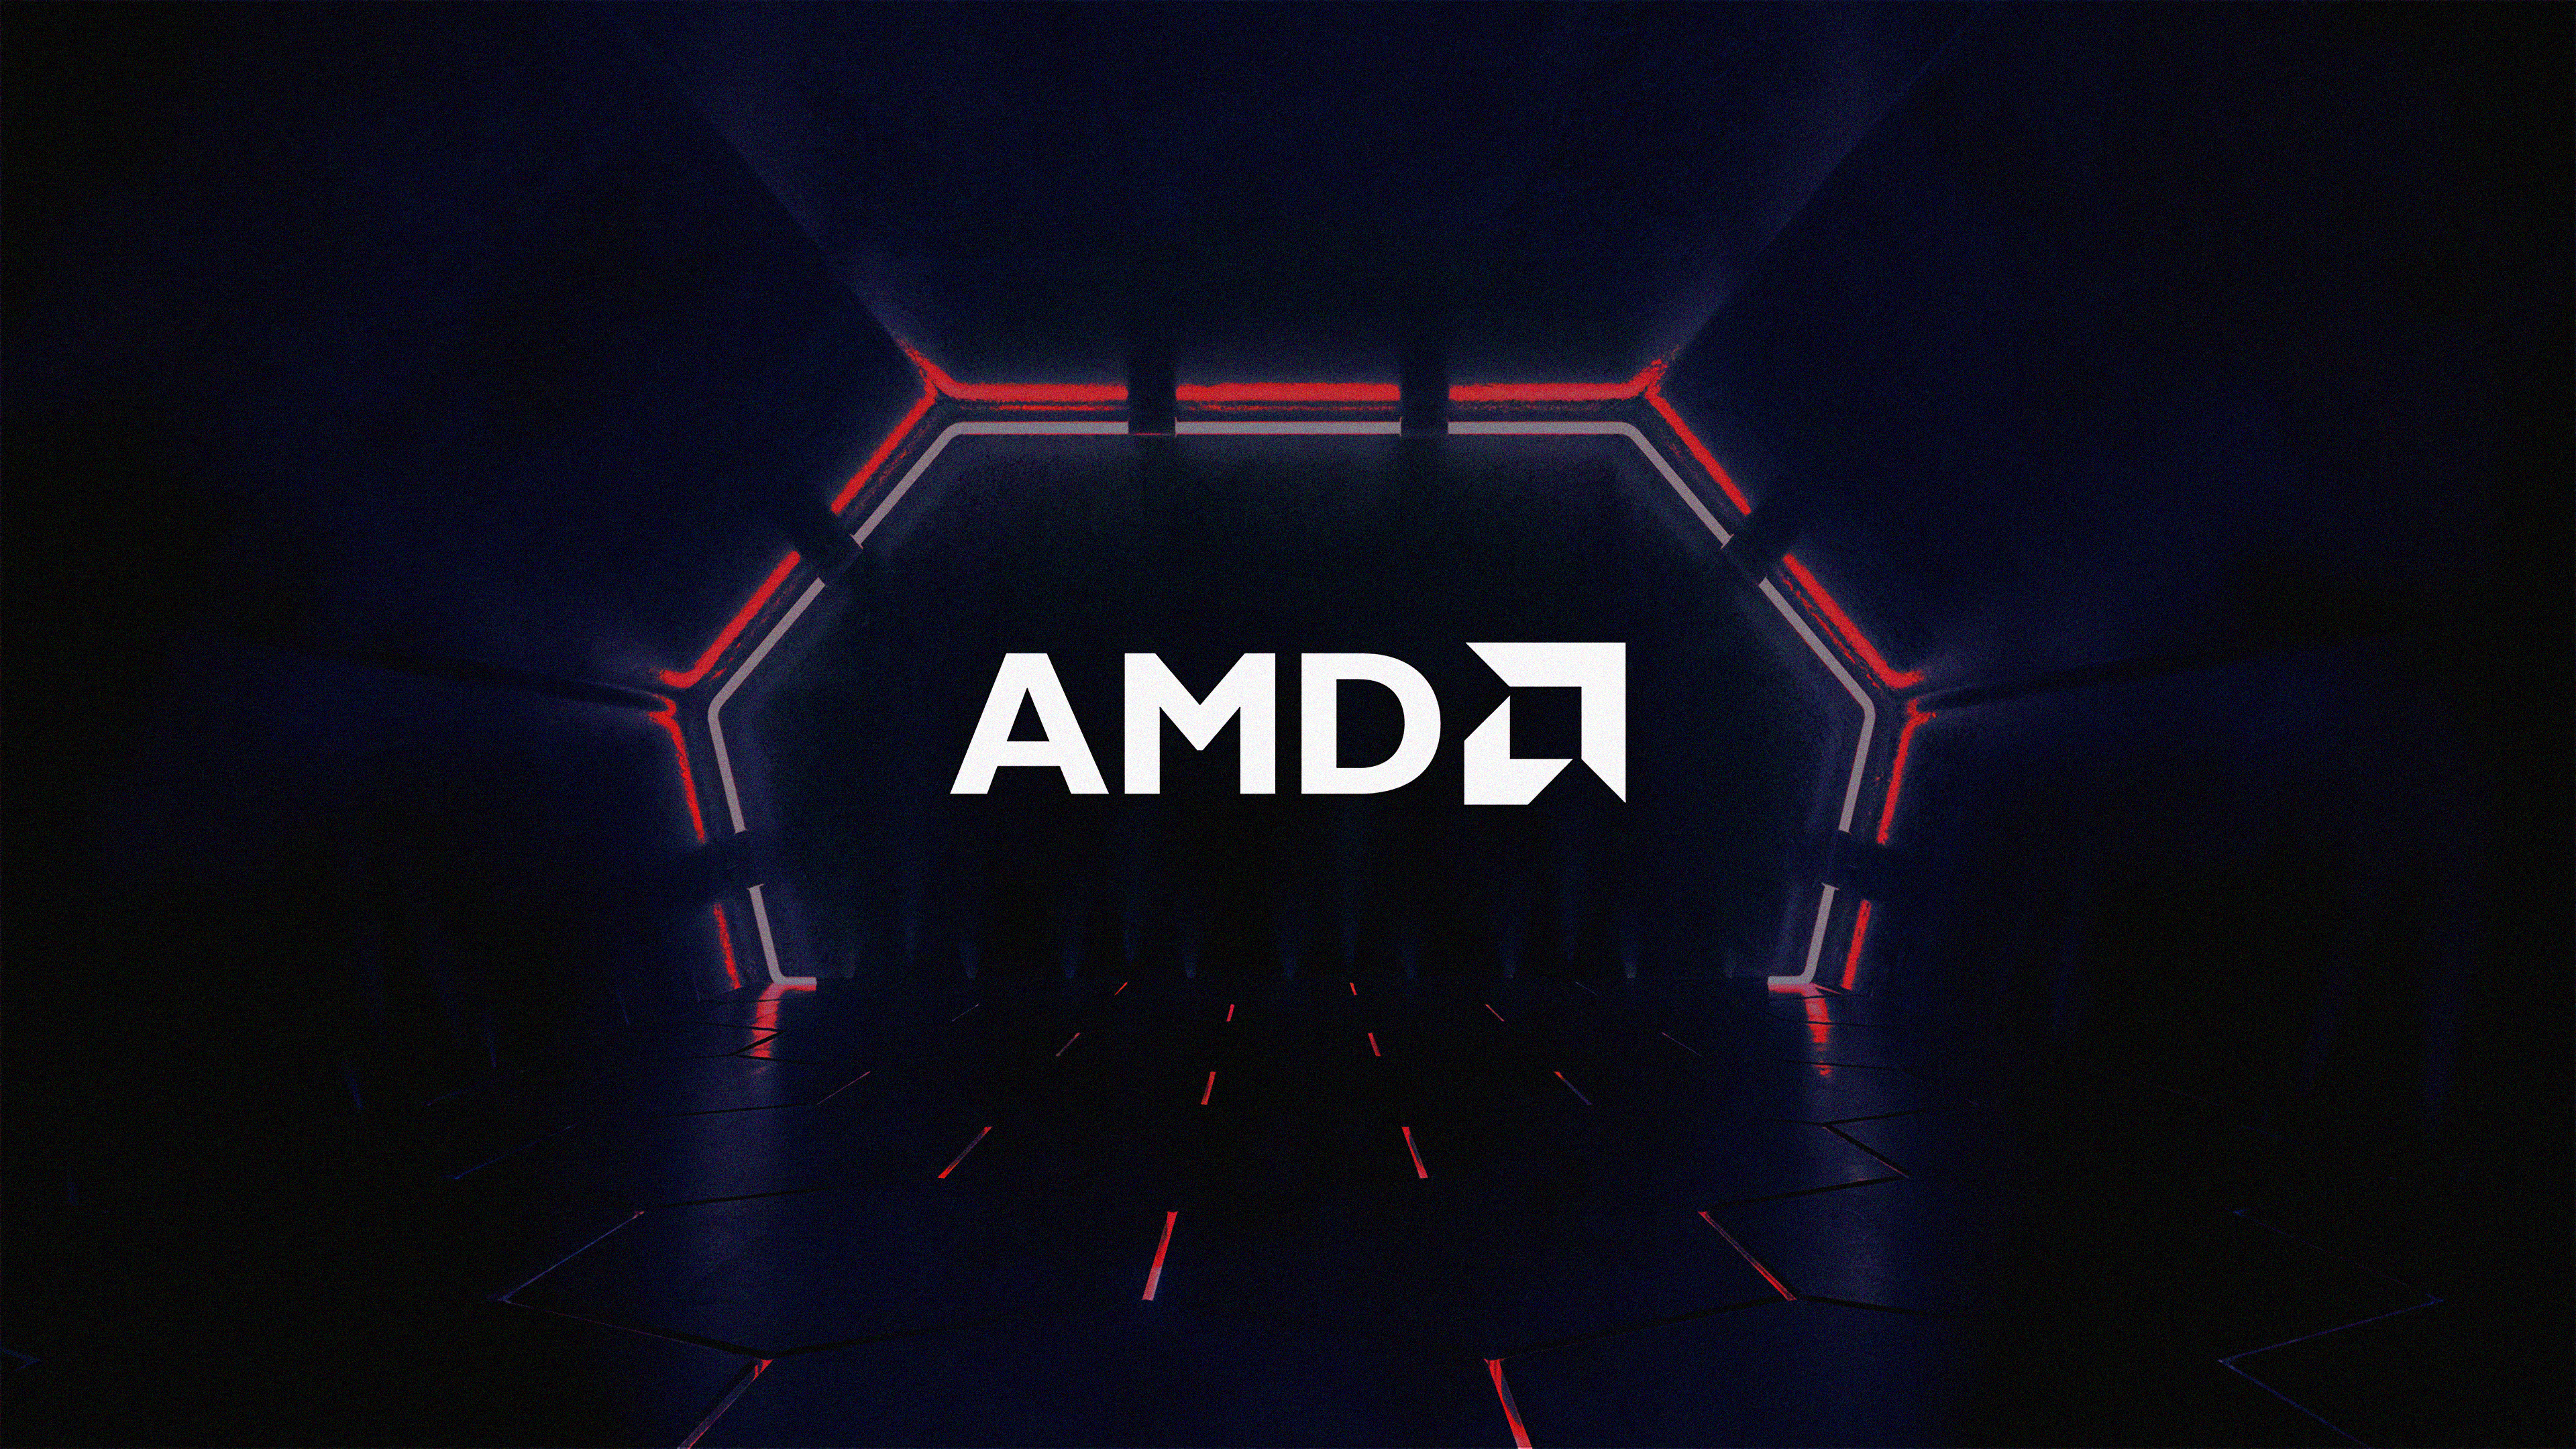 General 3840x2160 AMD RYZEN Radeon simple background dark minimalism logo brand